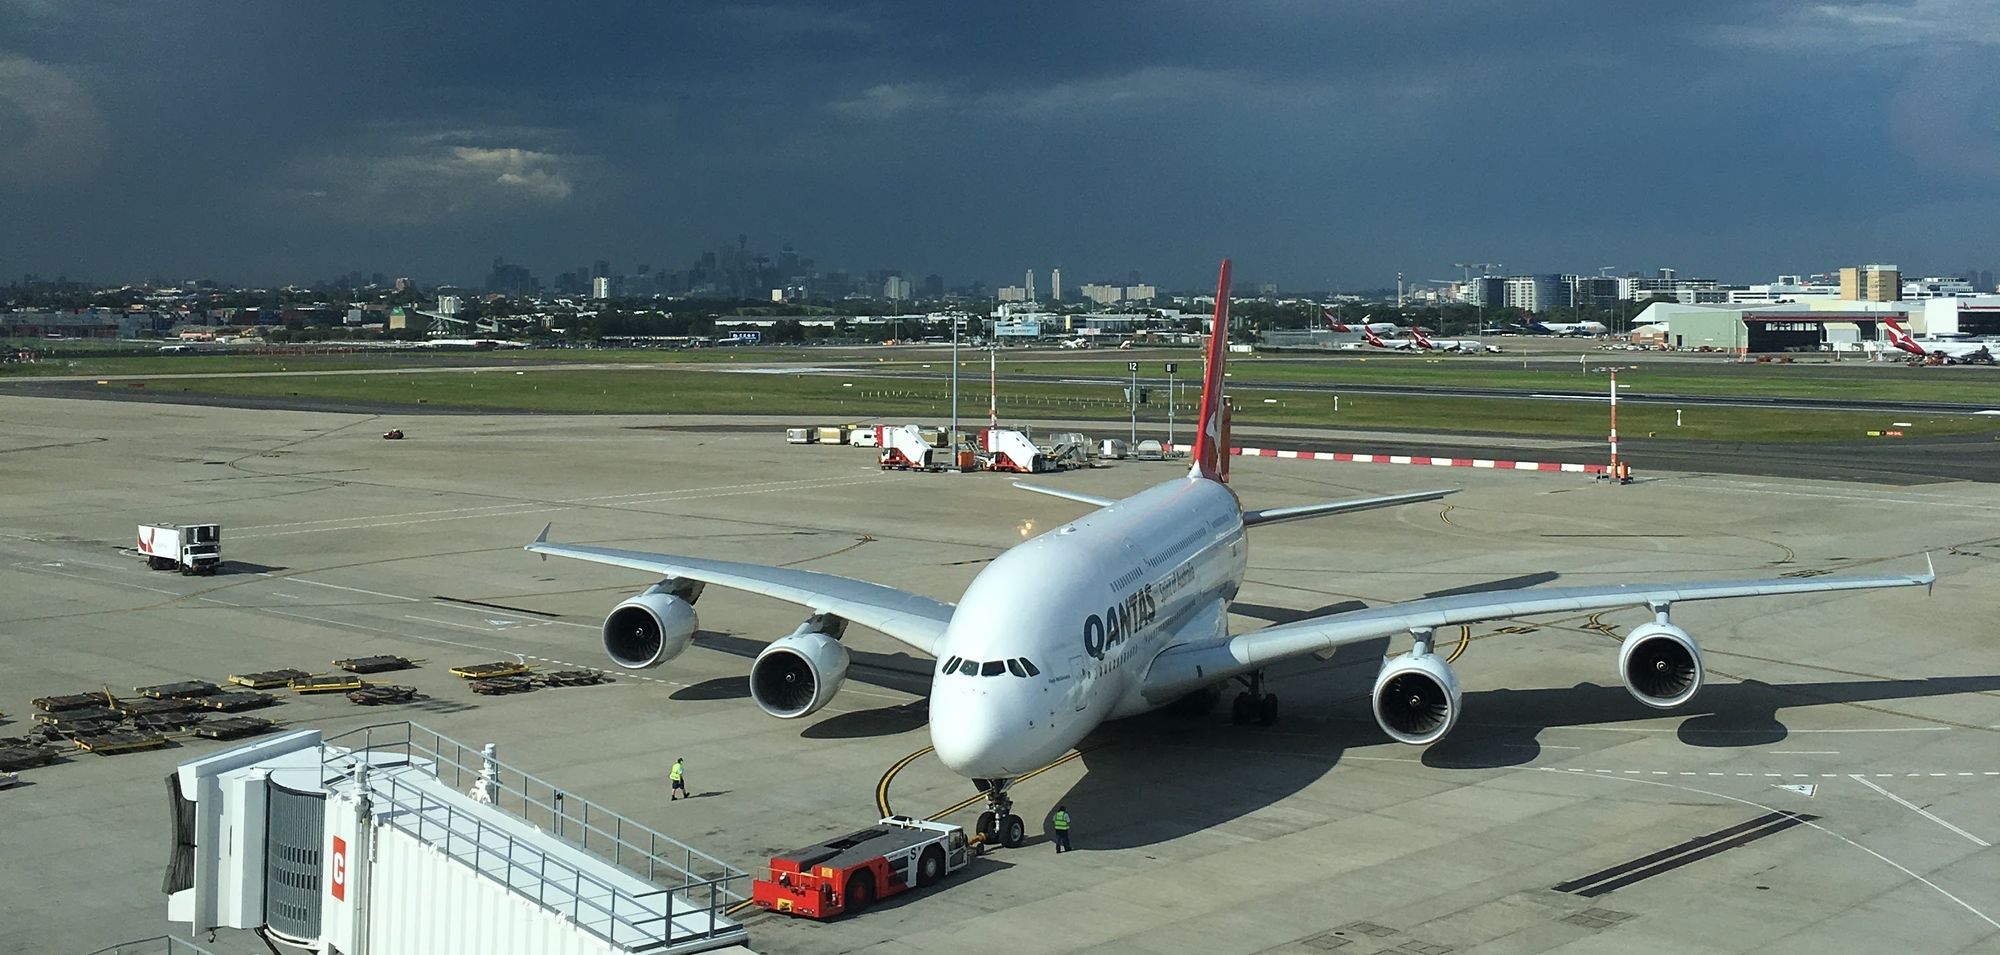 A Qantas A380 at Sydney Airport